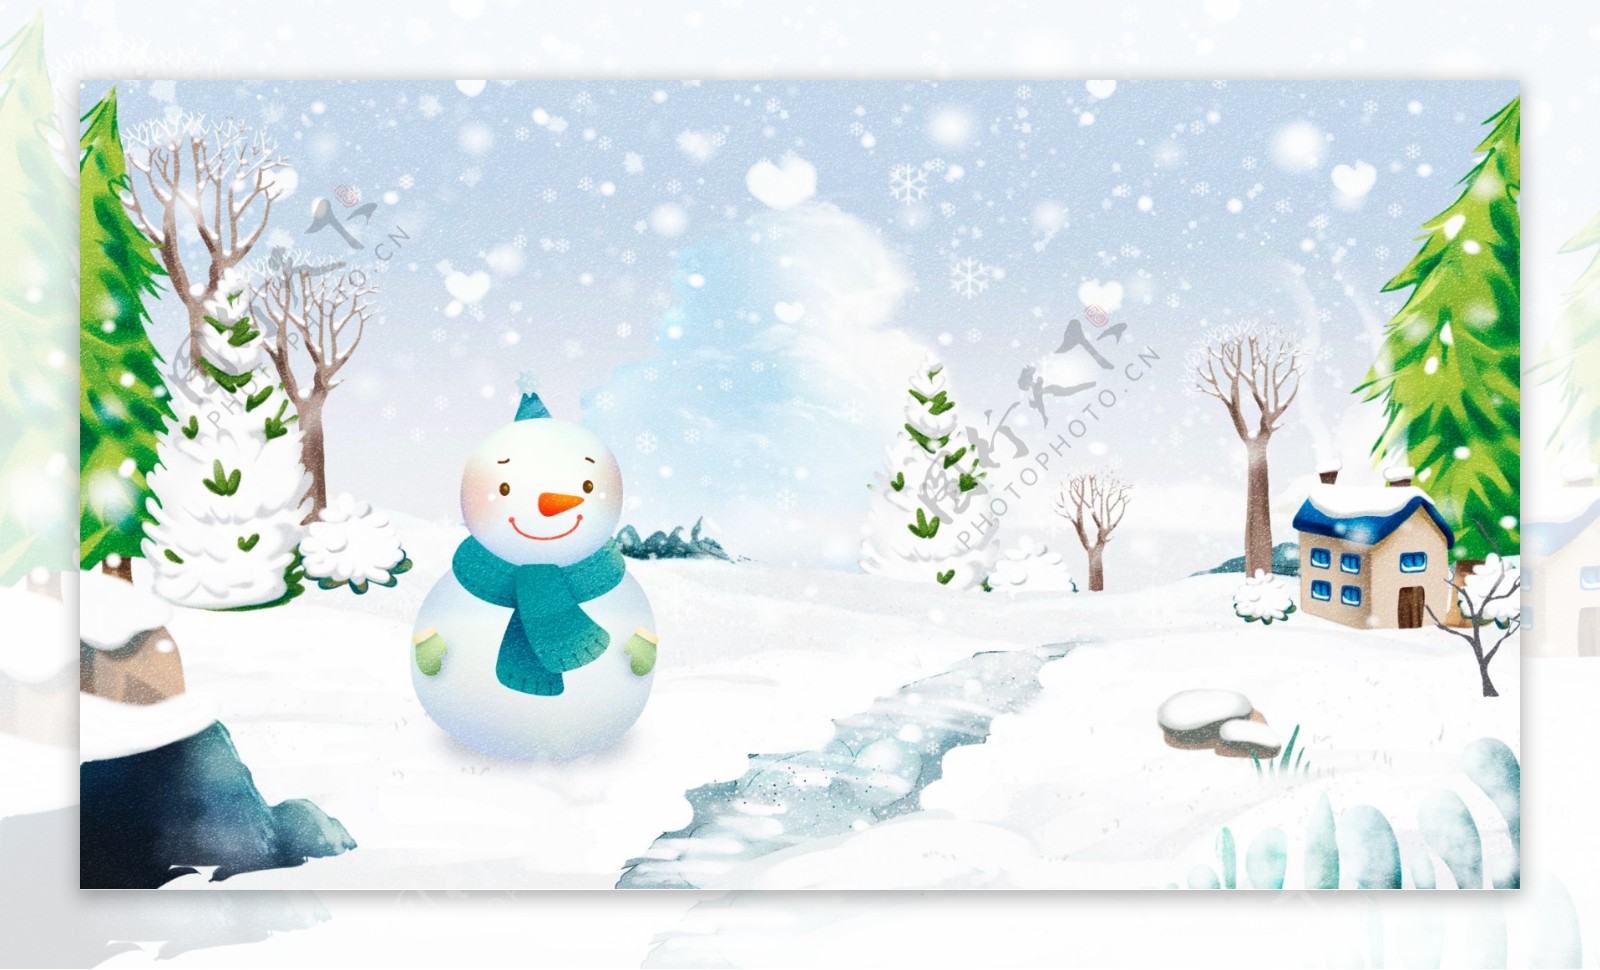 原创手绘冬季雪景美丽雪景插画